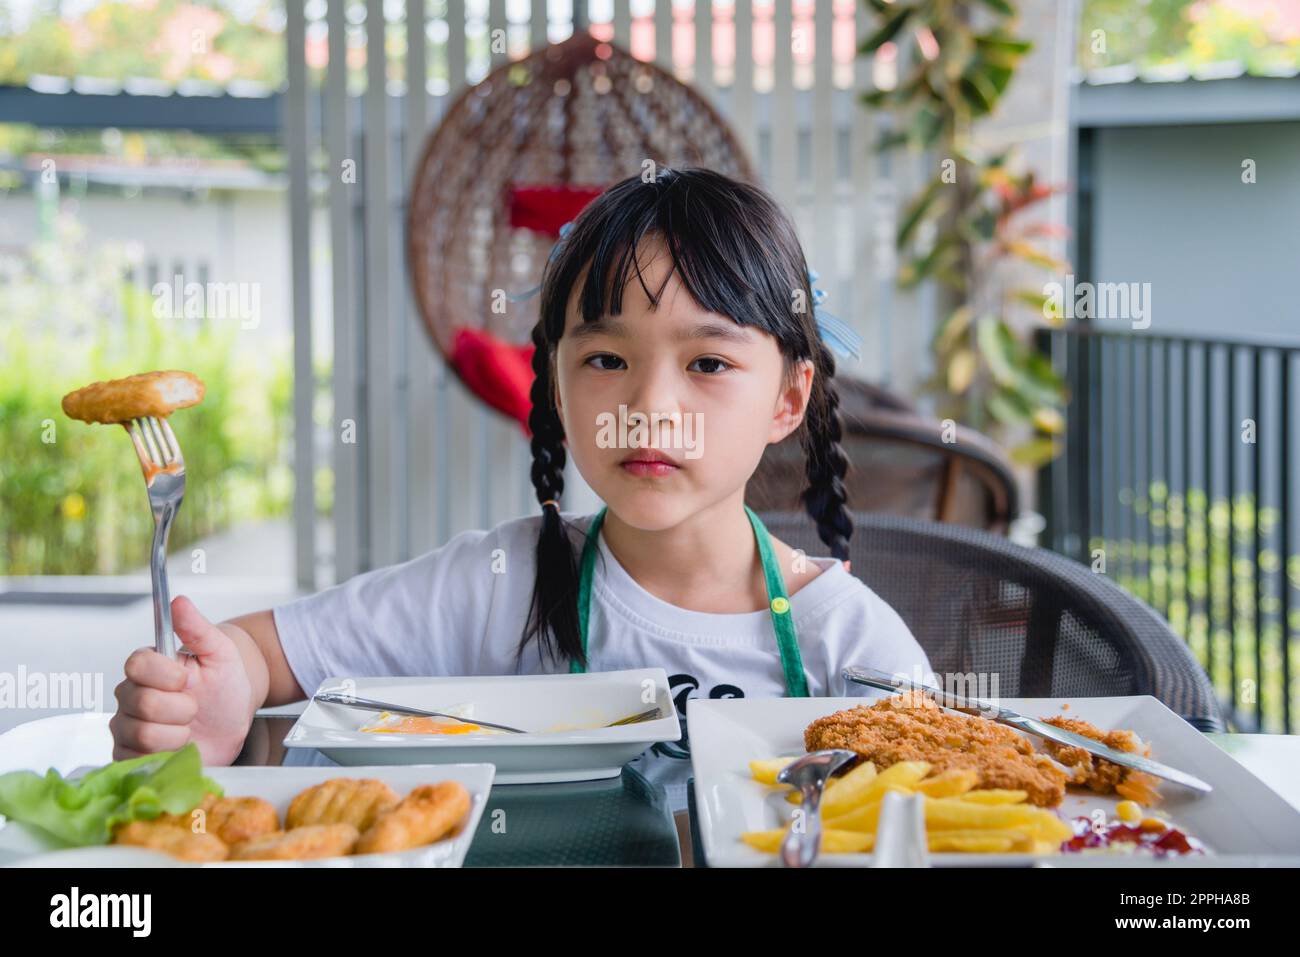 Jeune fille asiatique manger nuggets de poulet fast food sur table. Banque D'Images